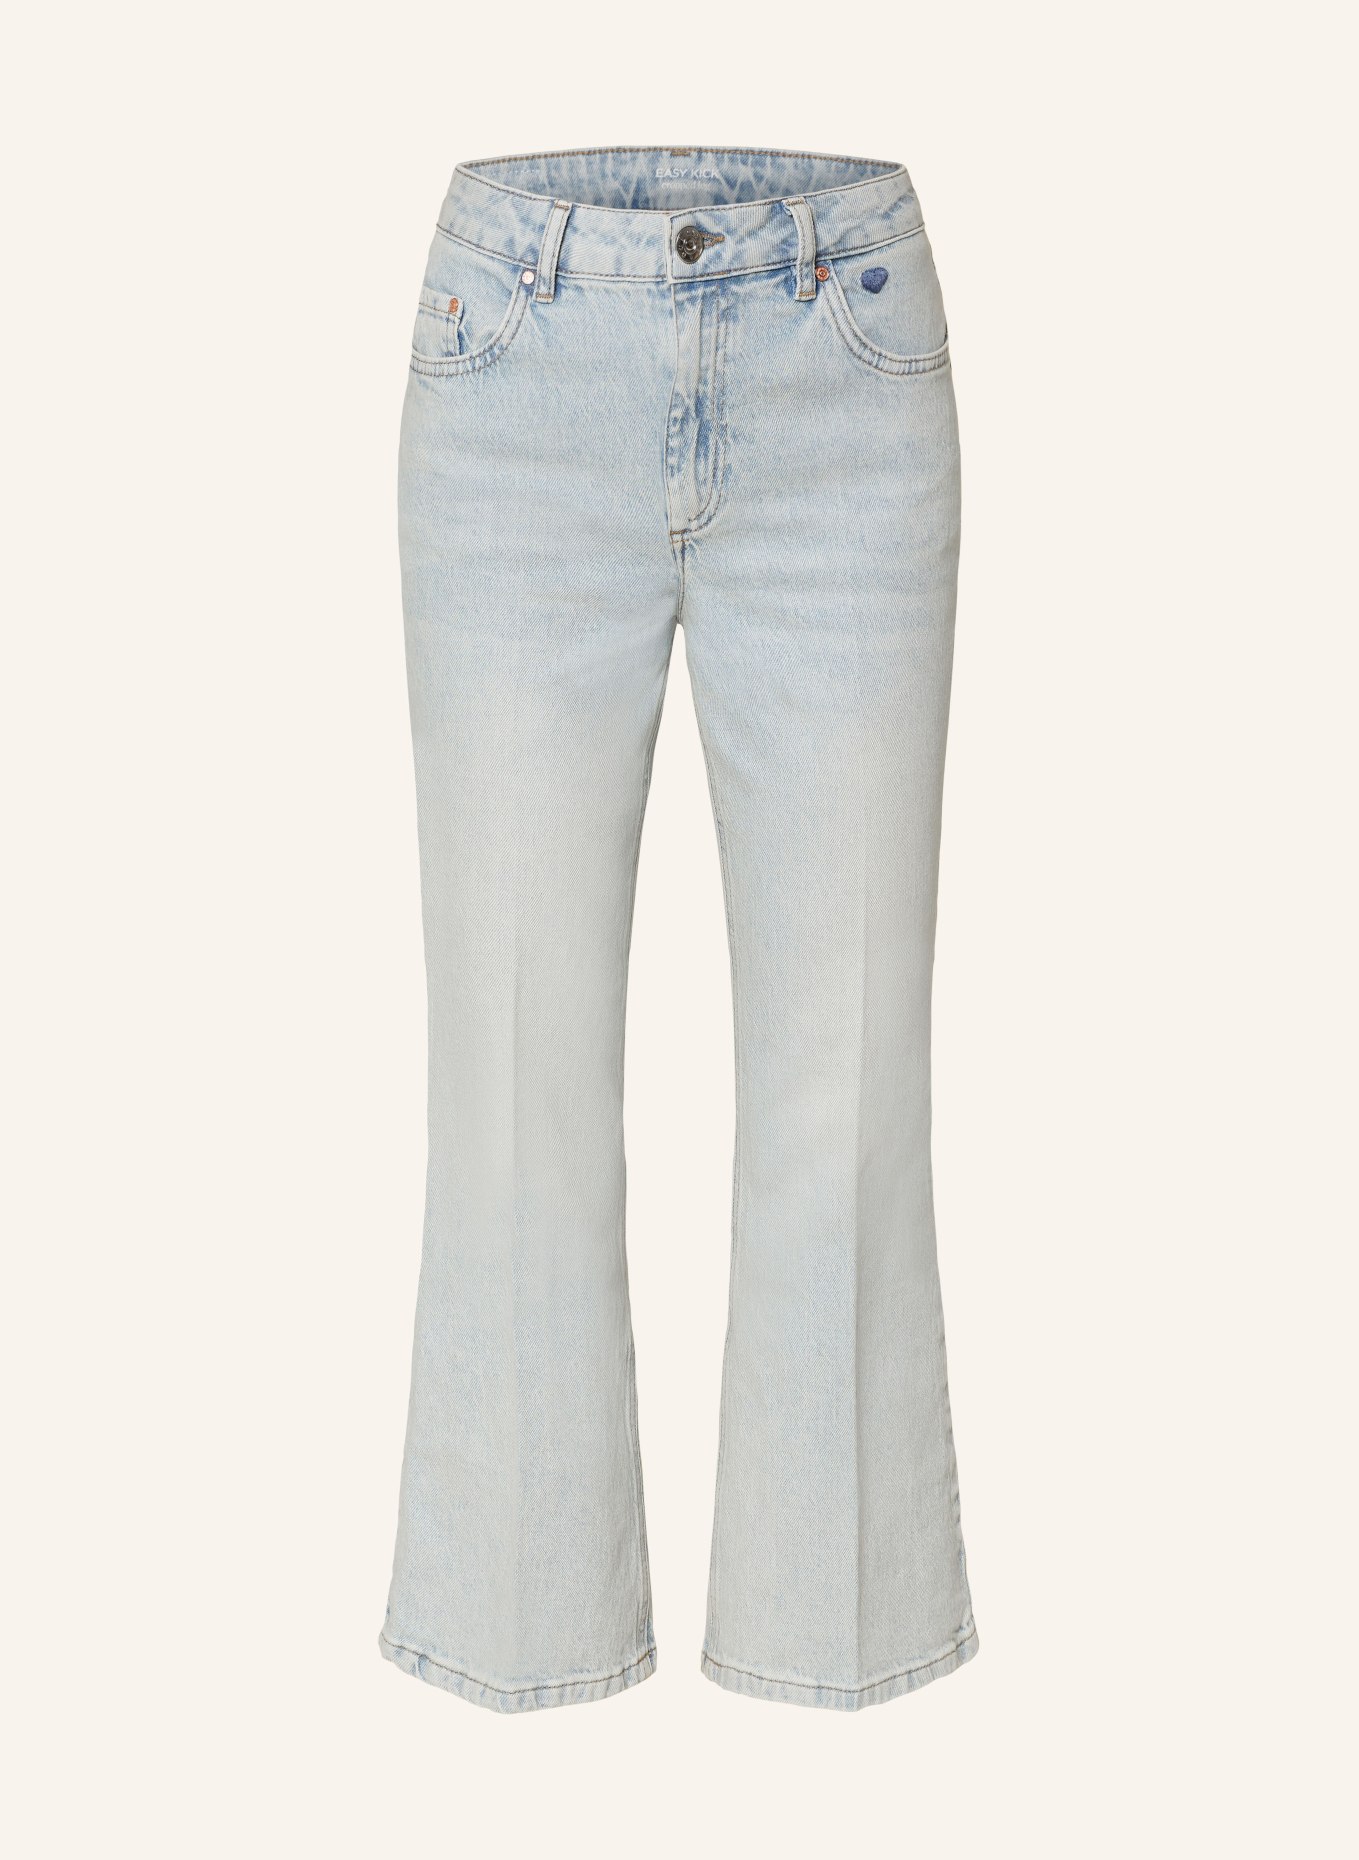 oui 7/8 jeans, Color: 5300 BLUE DENIM (Image 1)